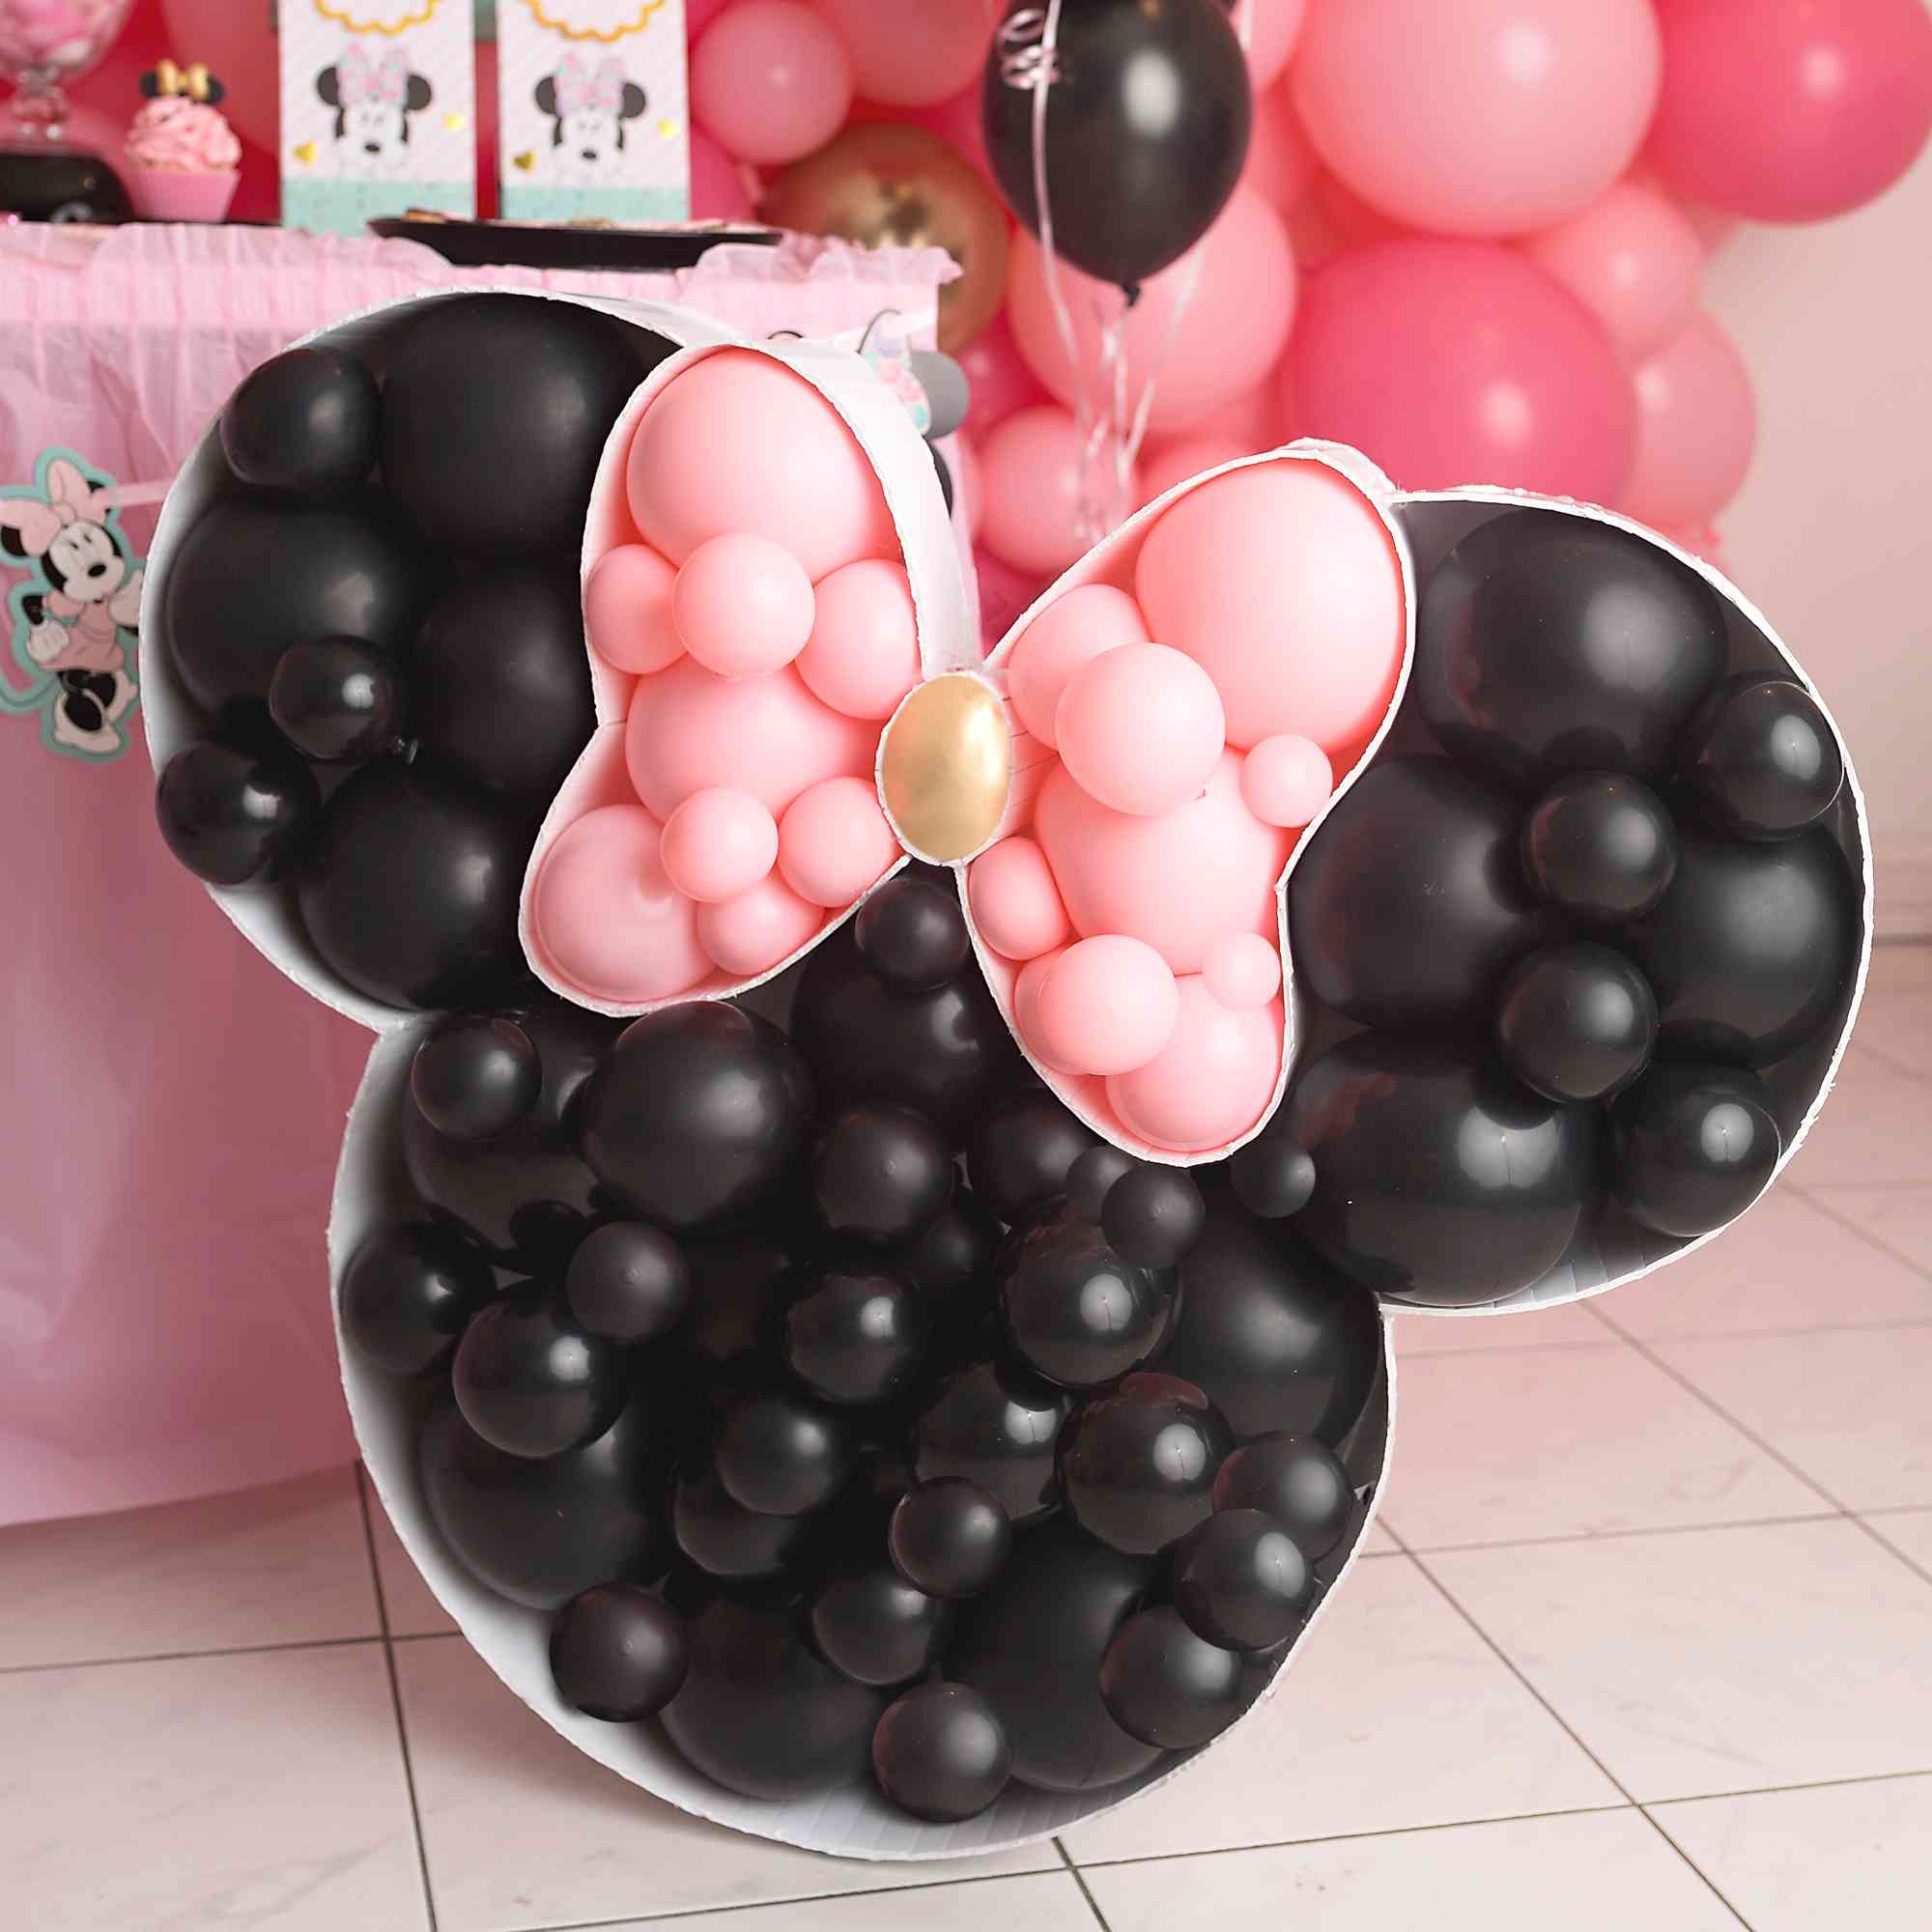 D2coration originale pour anniversaire et fêtes avec des mini ballons